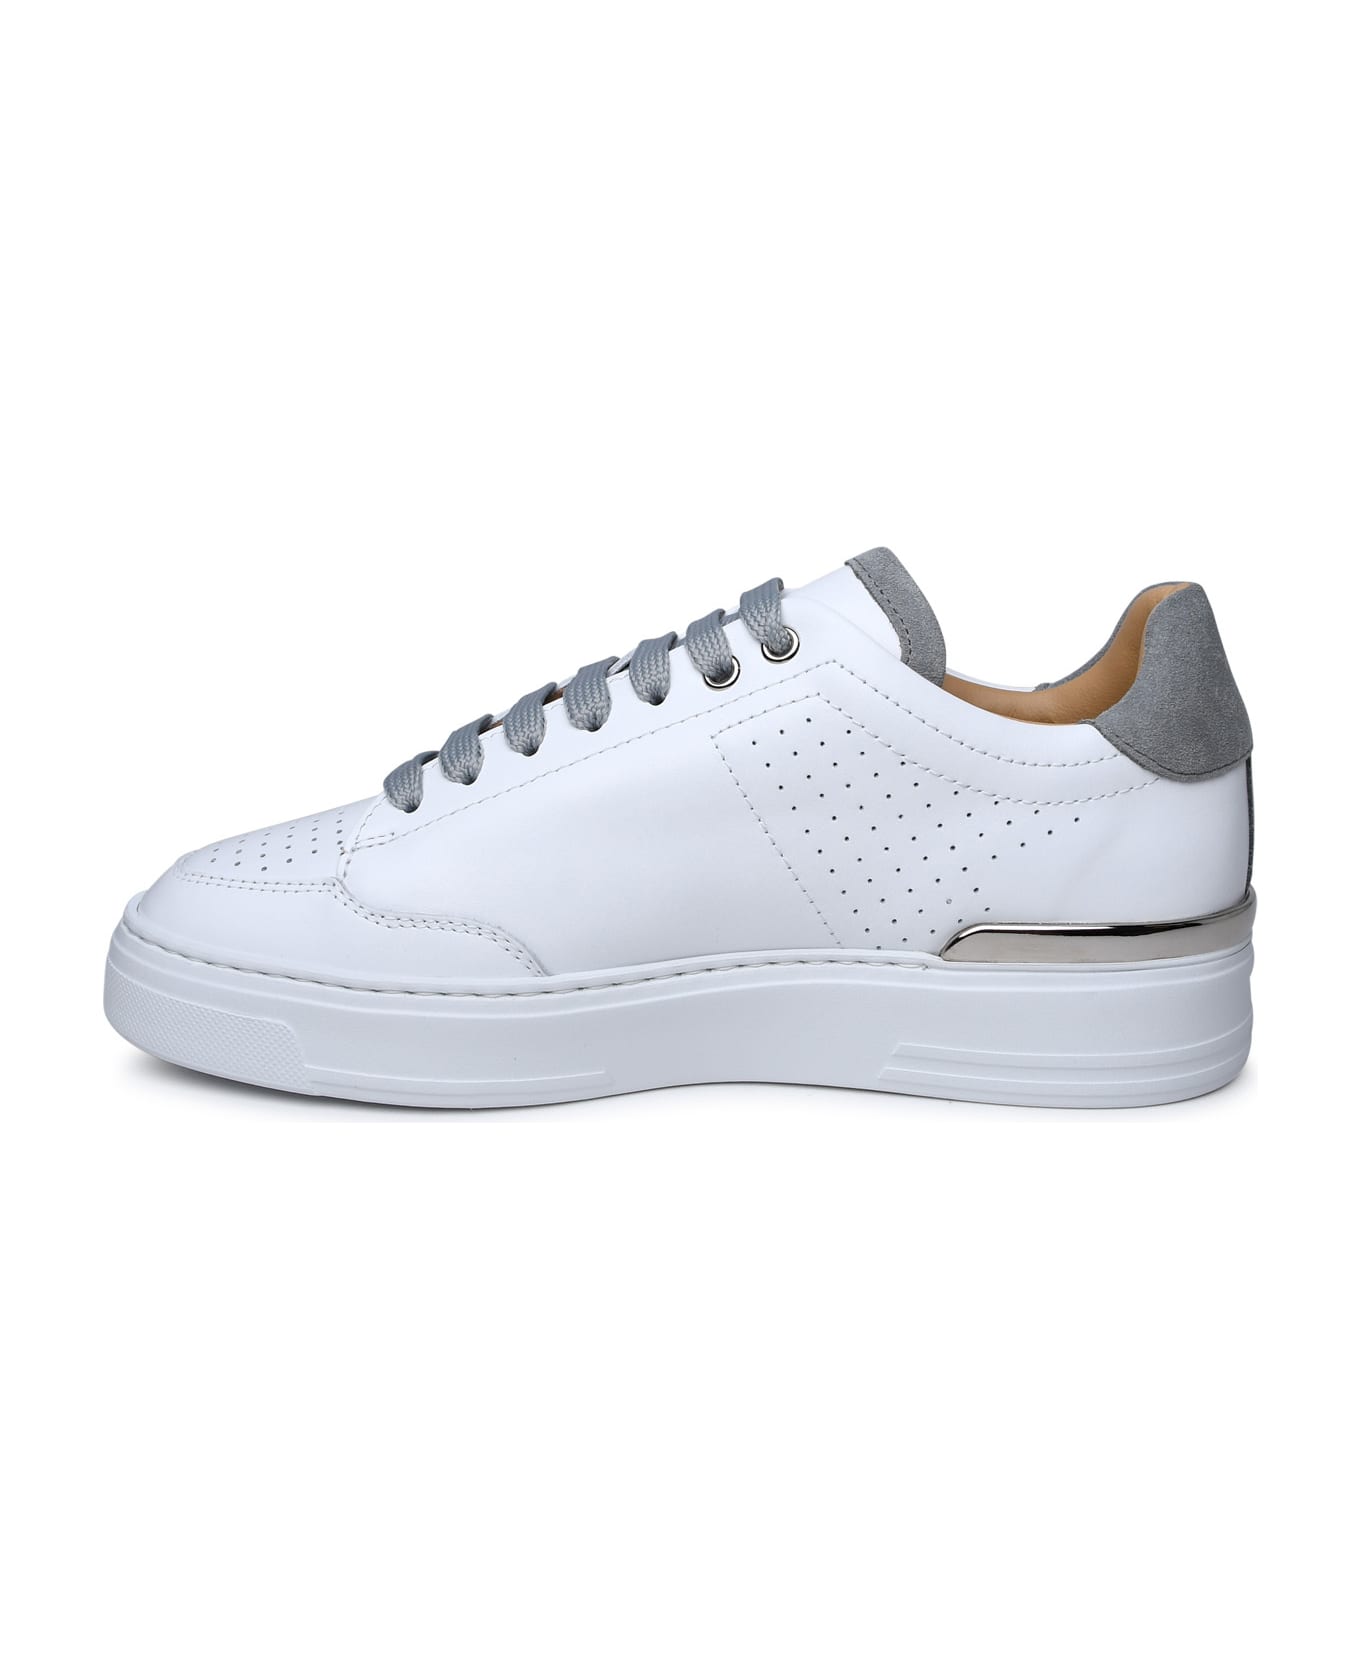 Philipp Plein White Leather Sneakers - White